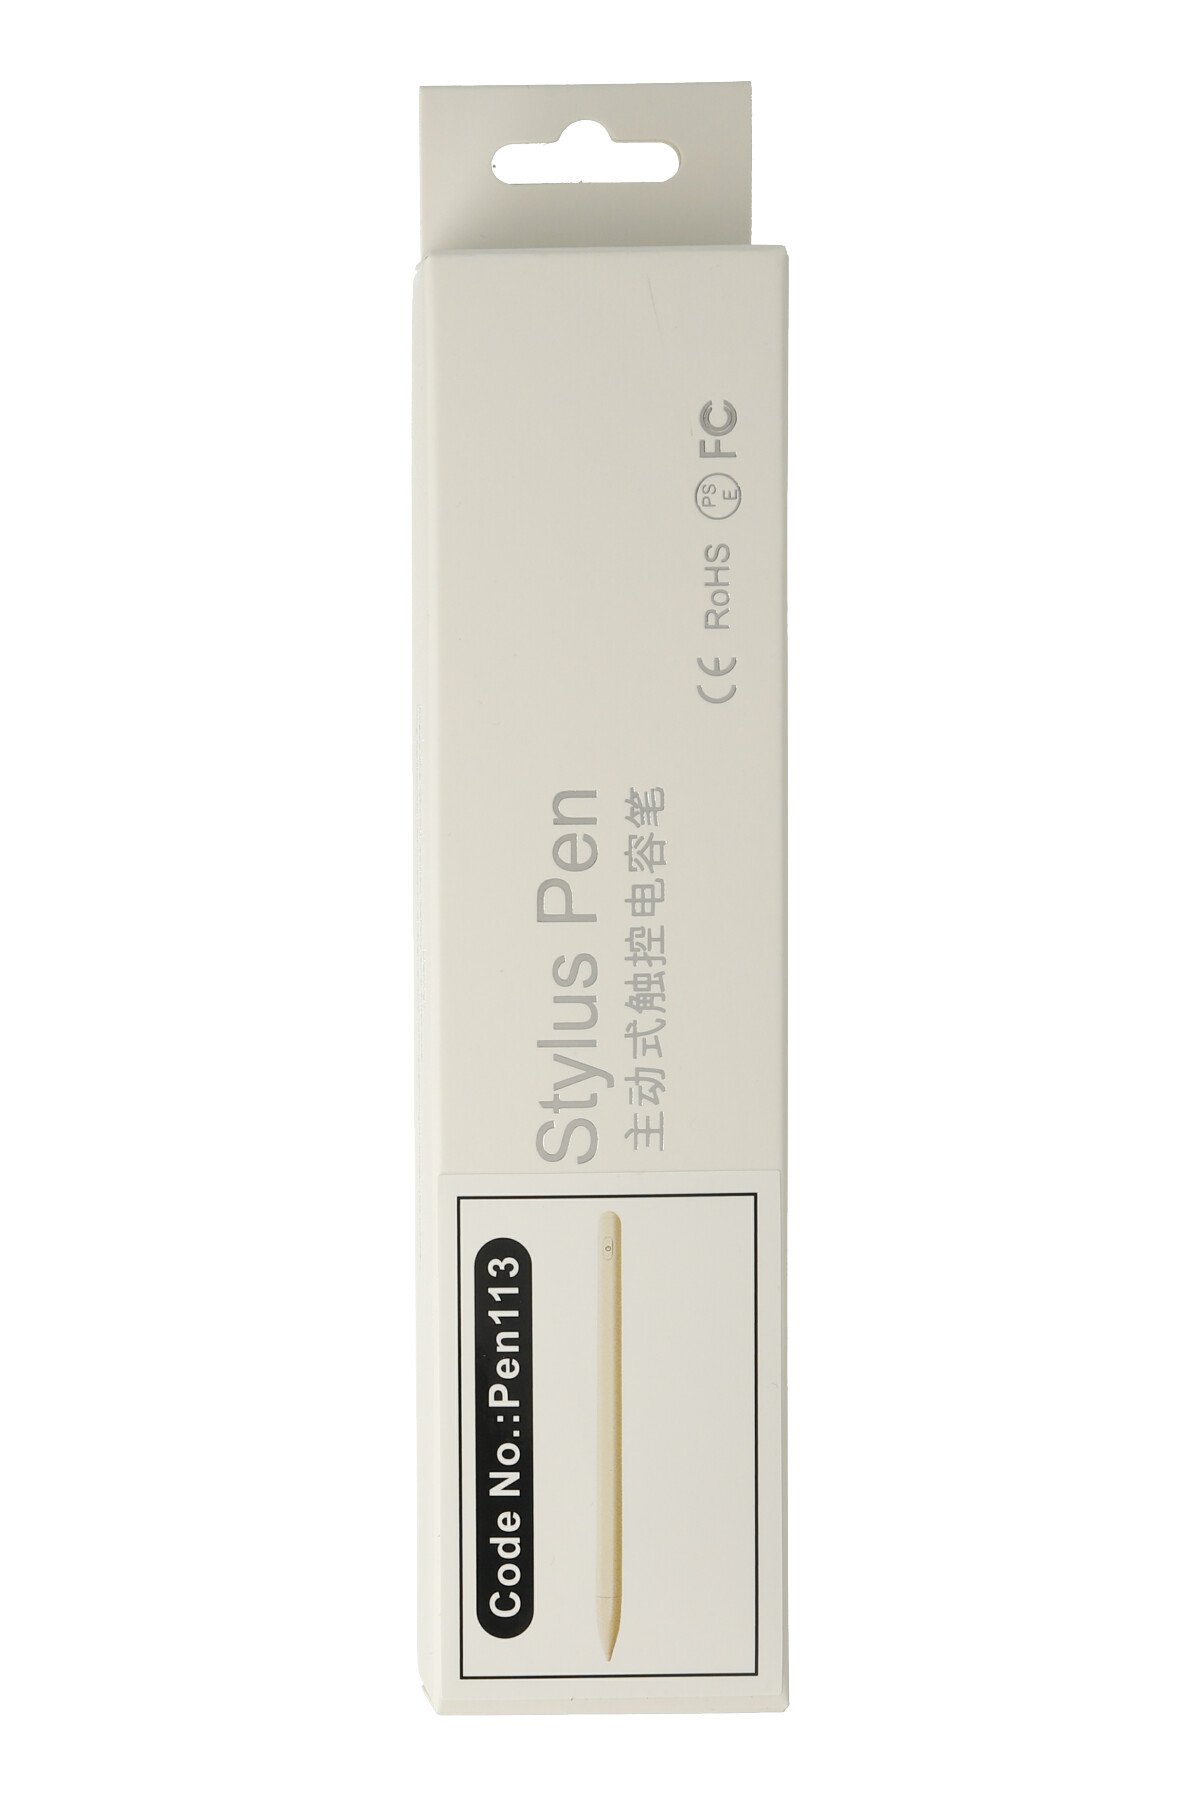 Newface Makaralı 4in1 USB Kablo - Pembe